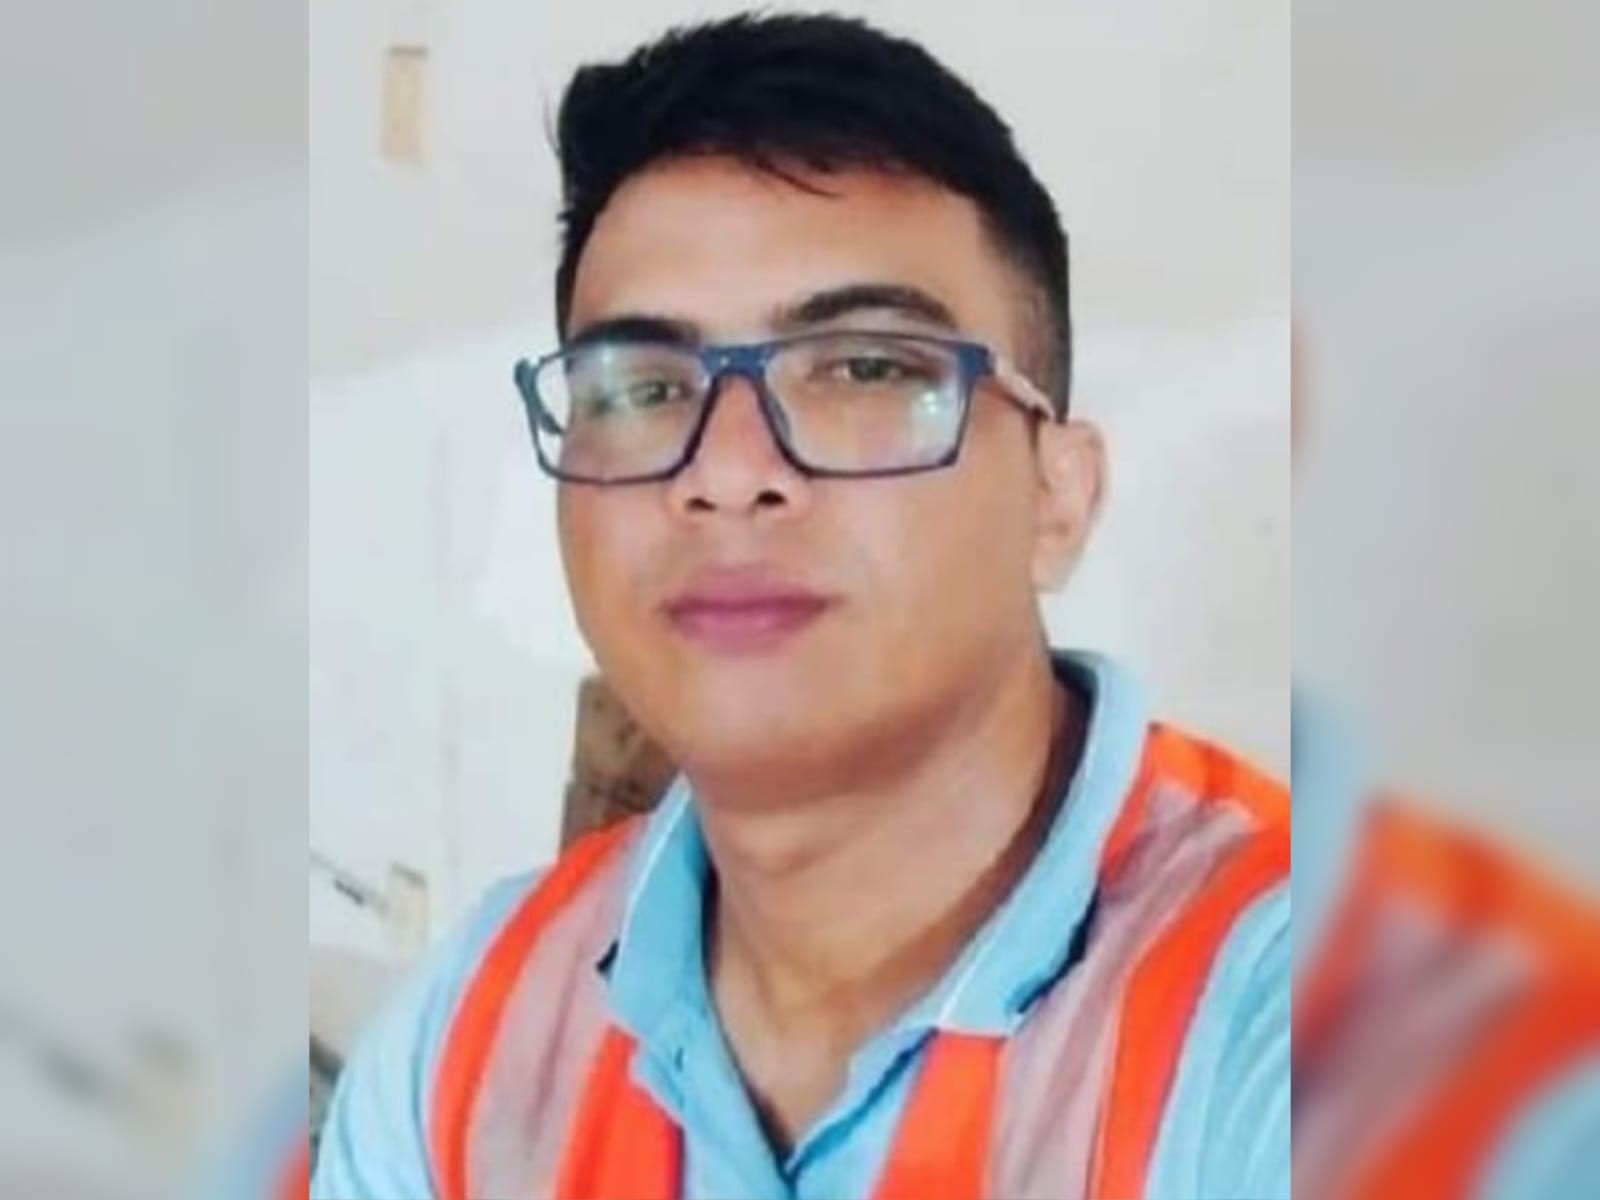 Jovem evangélico é morto a tiros enquanto aguardava amigo para ir ao trabalho no Ceará